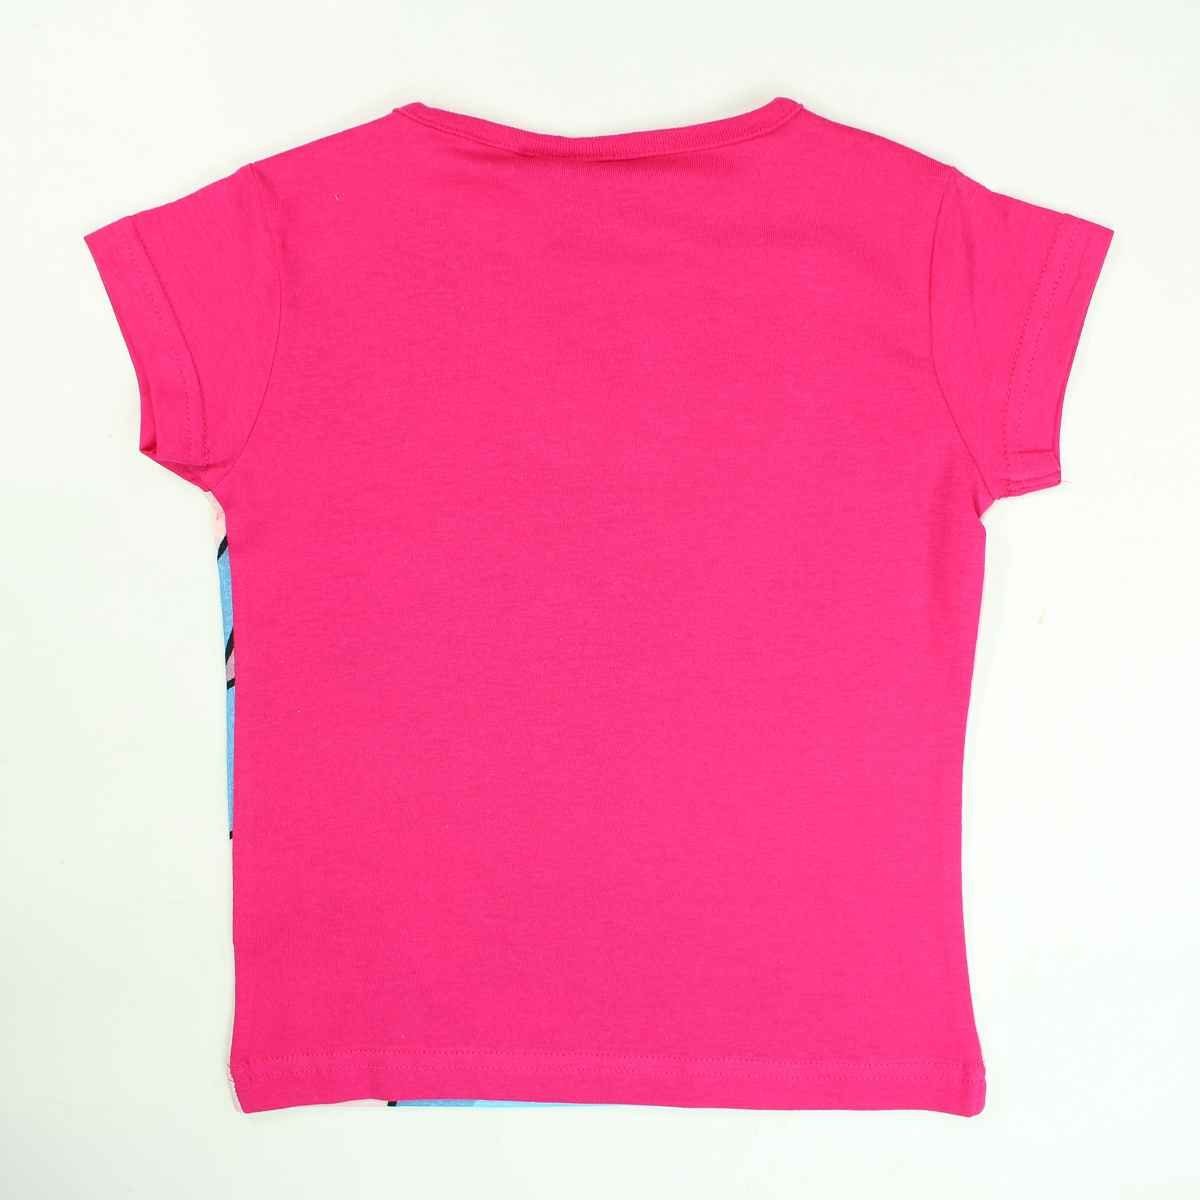 Gr. Kurze Stitch - & Hose 128 Set T-Shirt & tlg) (2 Lilo Shorty Mädchen 98 cm Pink